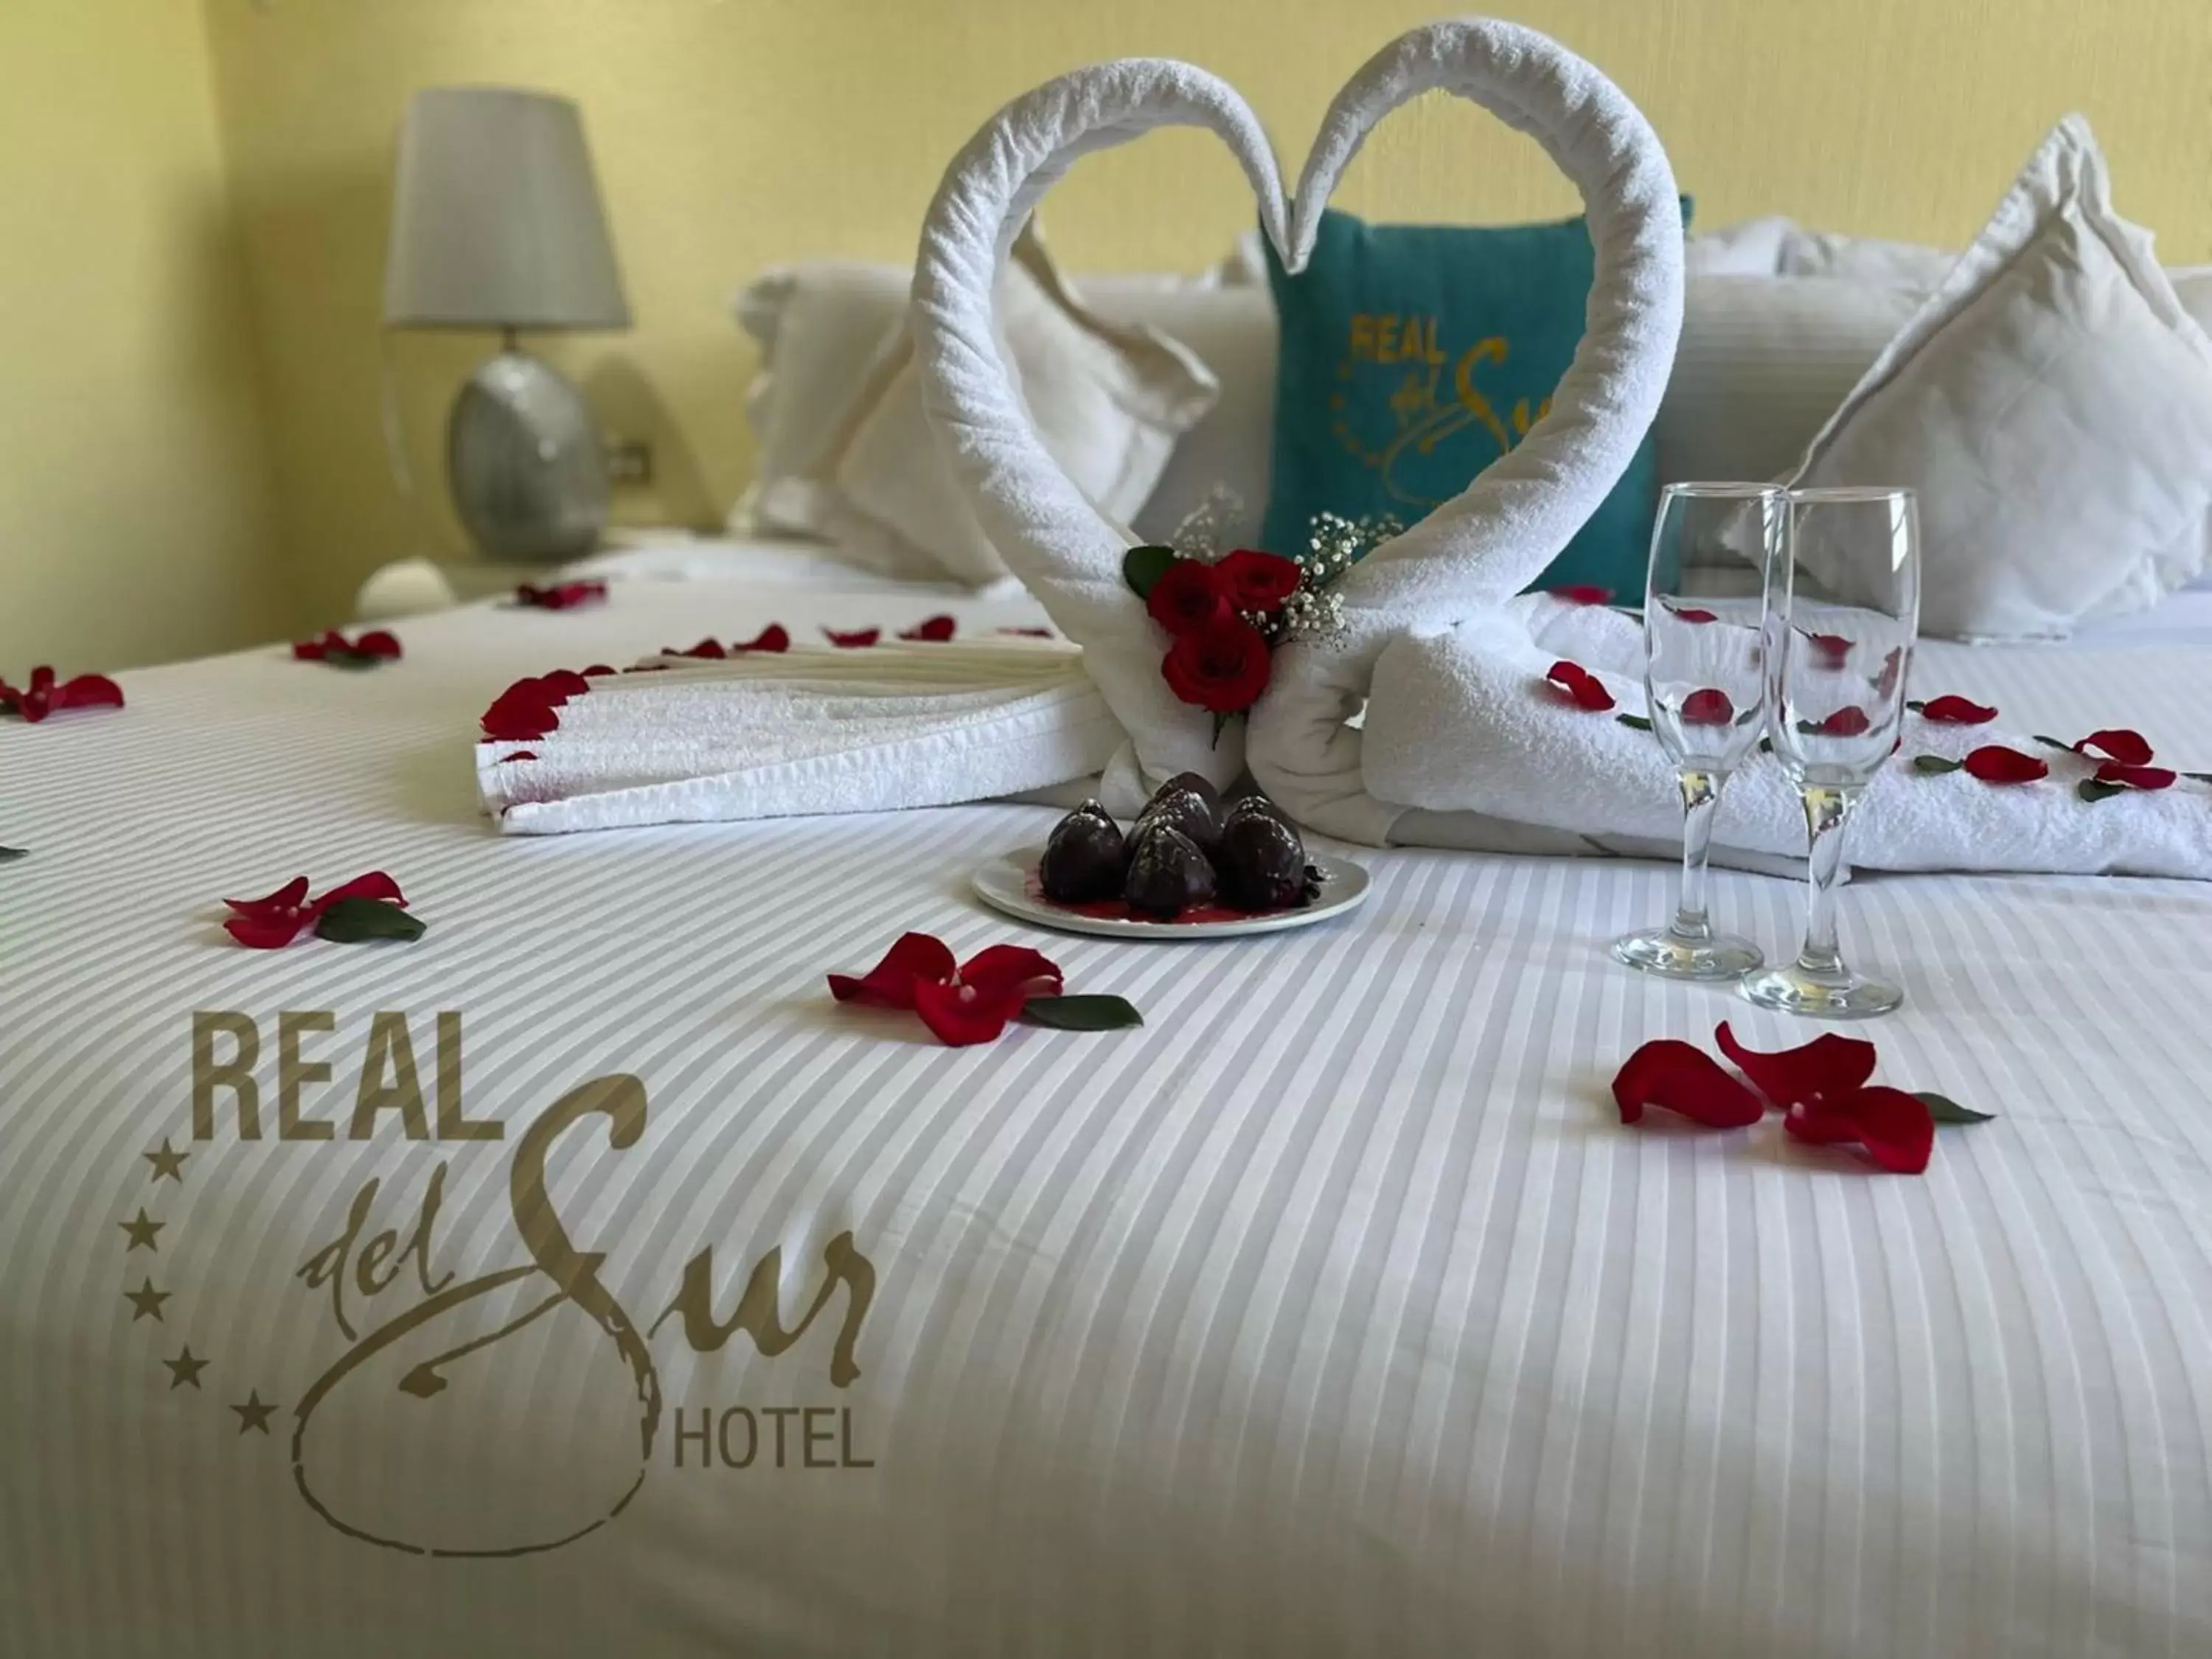 Bed in Hotel Real del Sur